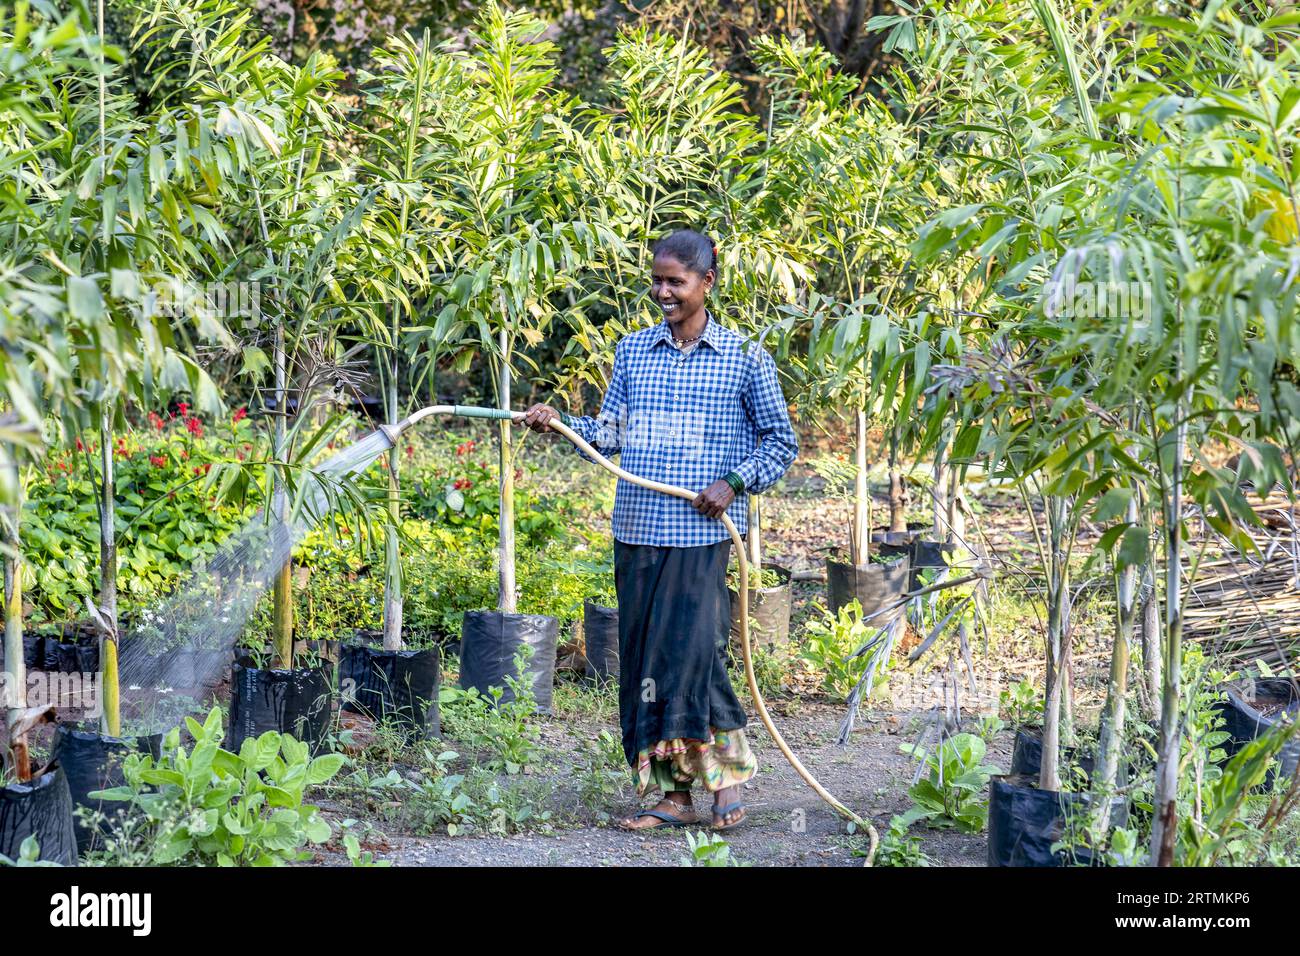 Gärtner, der einen der Gärten im Goverdan Ecovillage, Maharashtra, Indien, bewässert Stockfoto